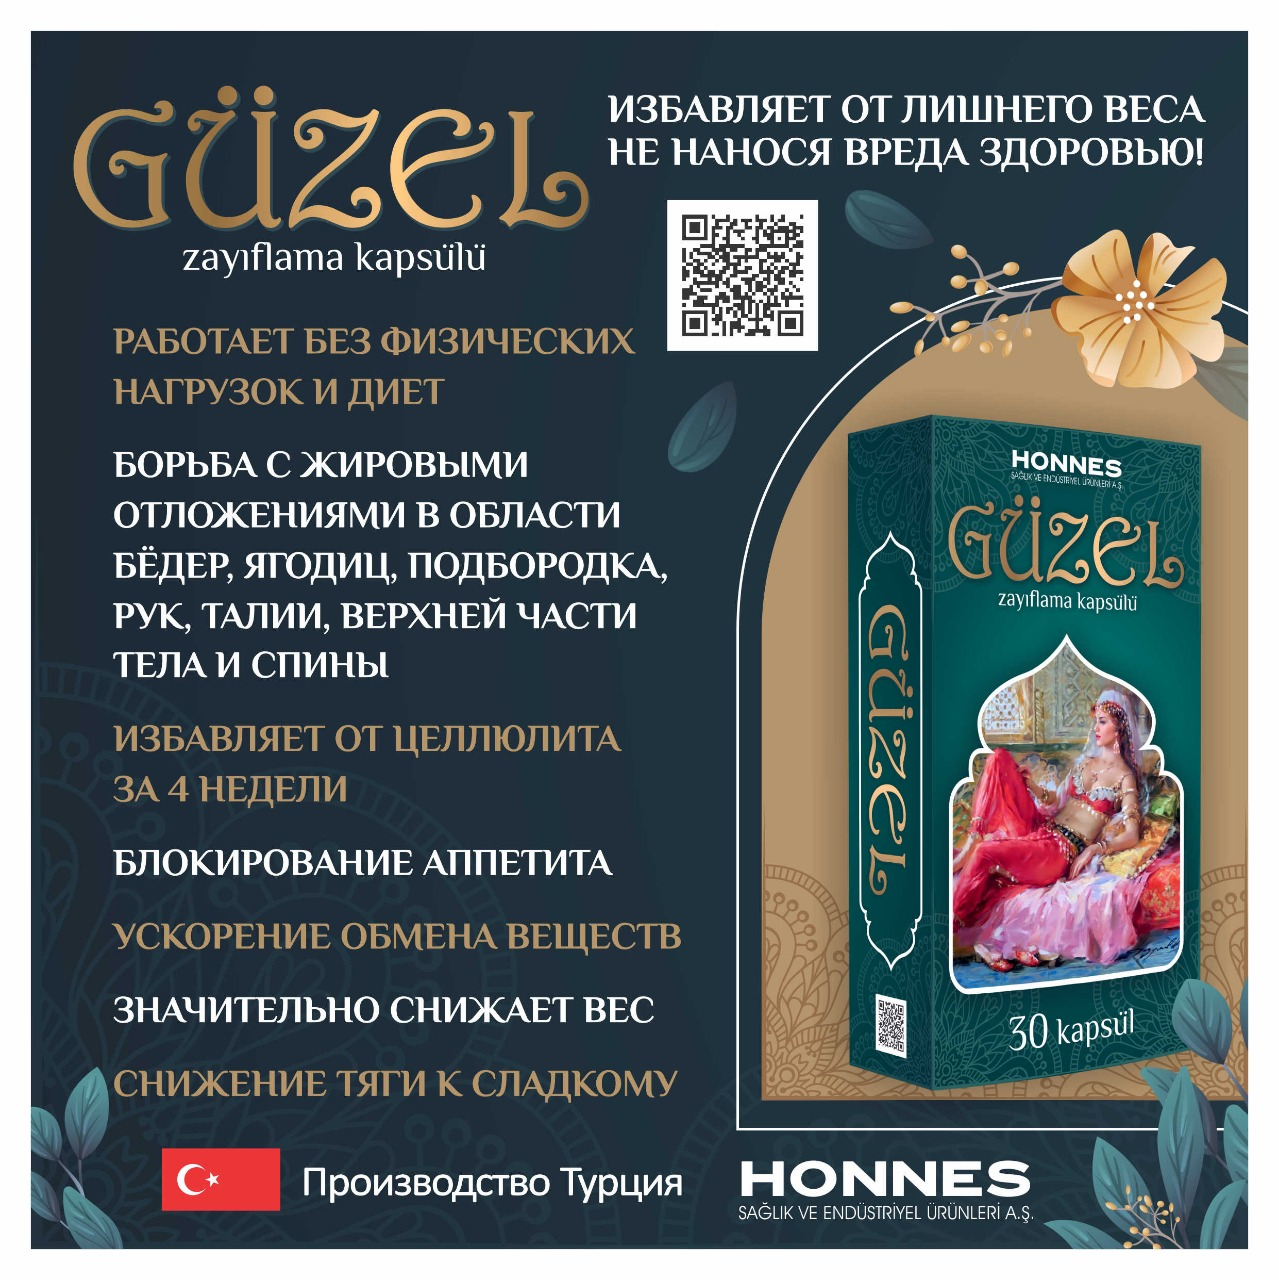 Güzel (Гузель) препарат для похудения